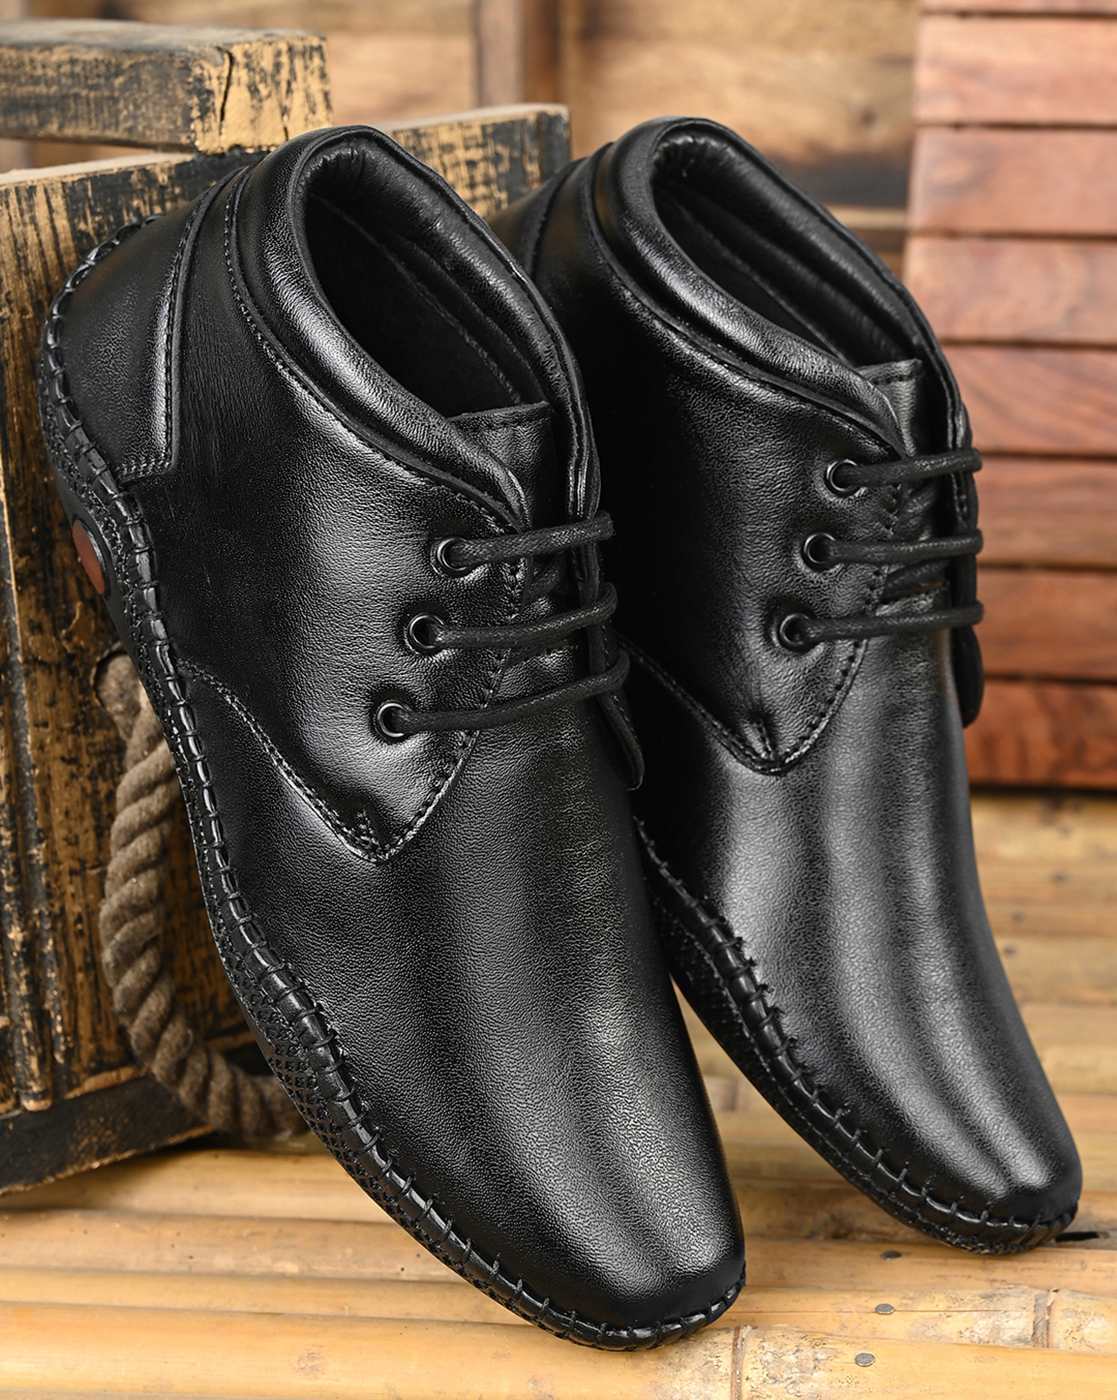 Buy Black Shoe For Women School With 2 Inch Heels online | Lazada.com.ph